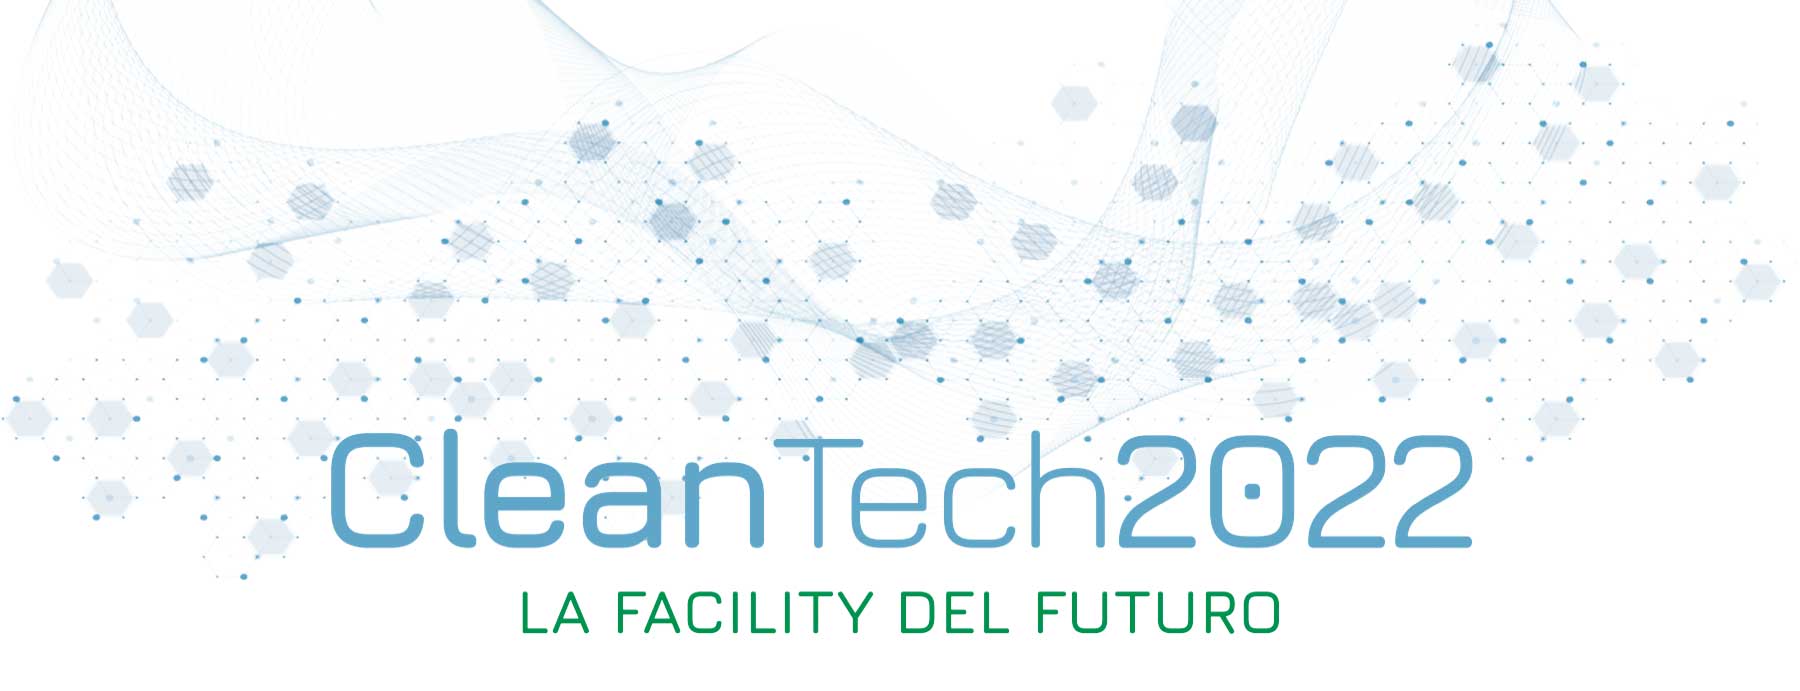 techno one partecipa a cleantech 2022 milano18 19-ottobre